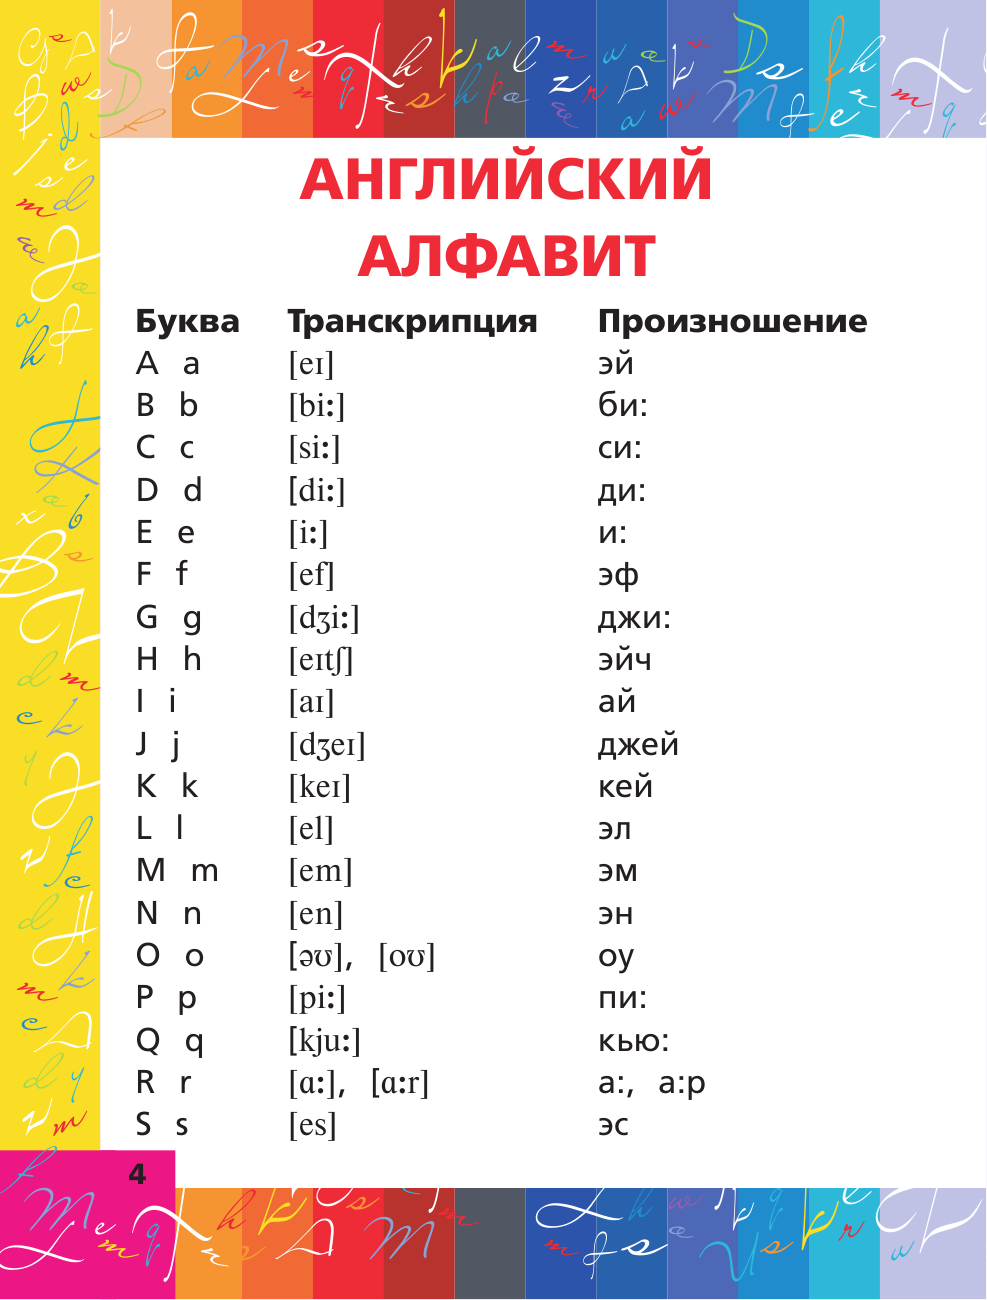 Матвеев Сергей Александрович Все правила английского языка в схемах и таблицах - страница 4